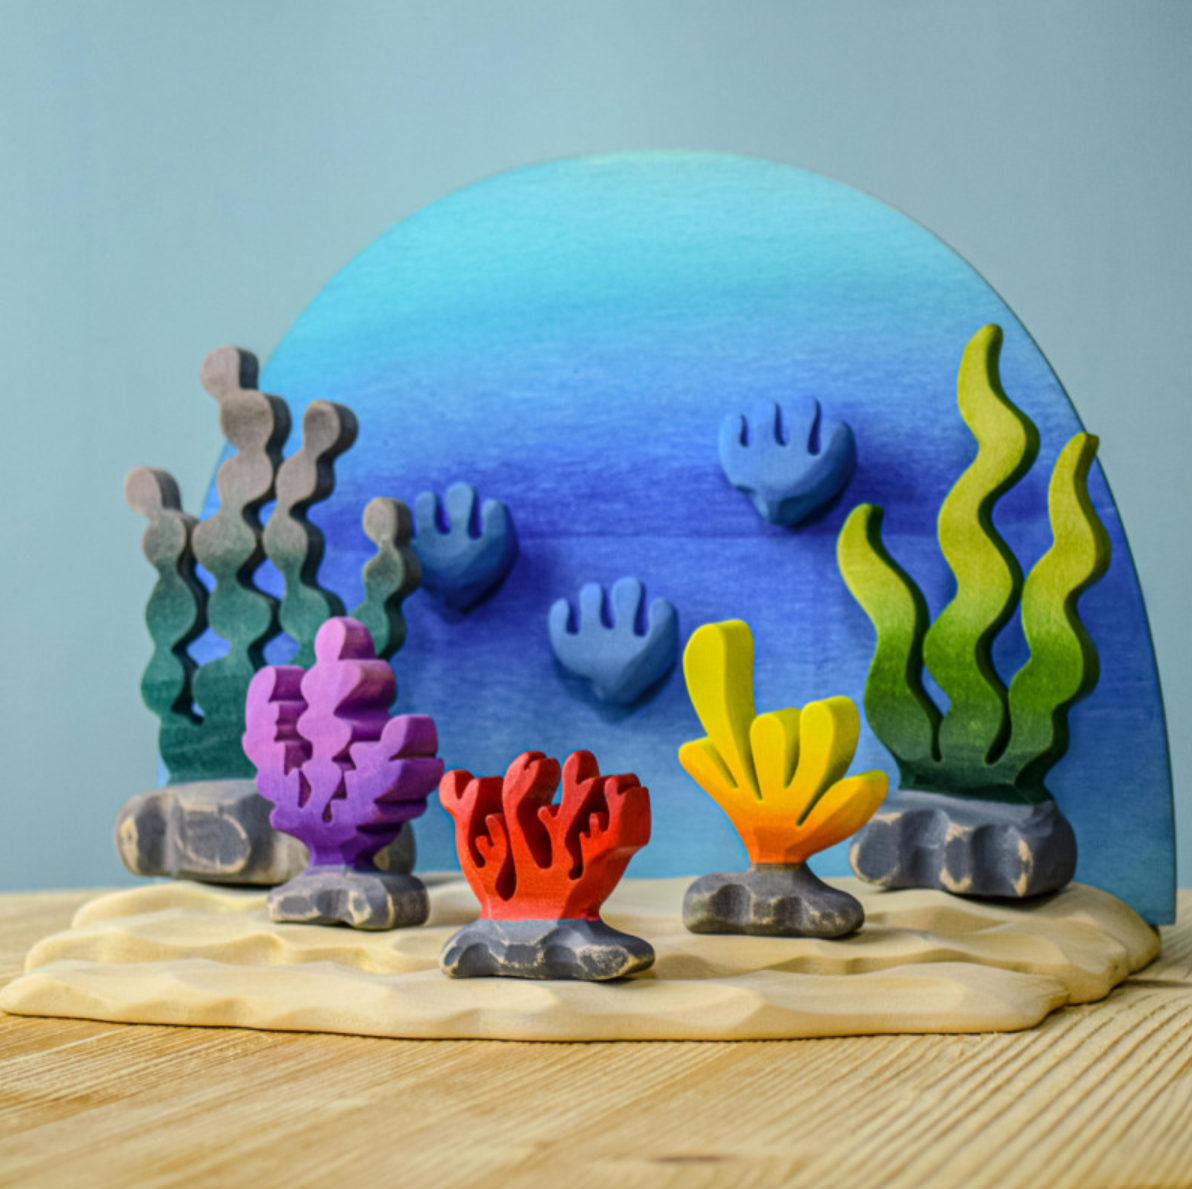 Bumbu Toys Deep Ocean Set